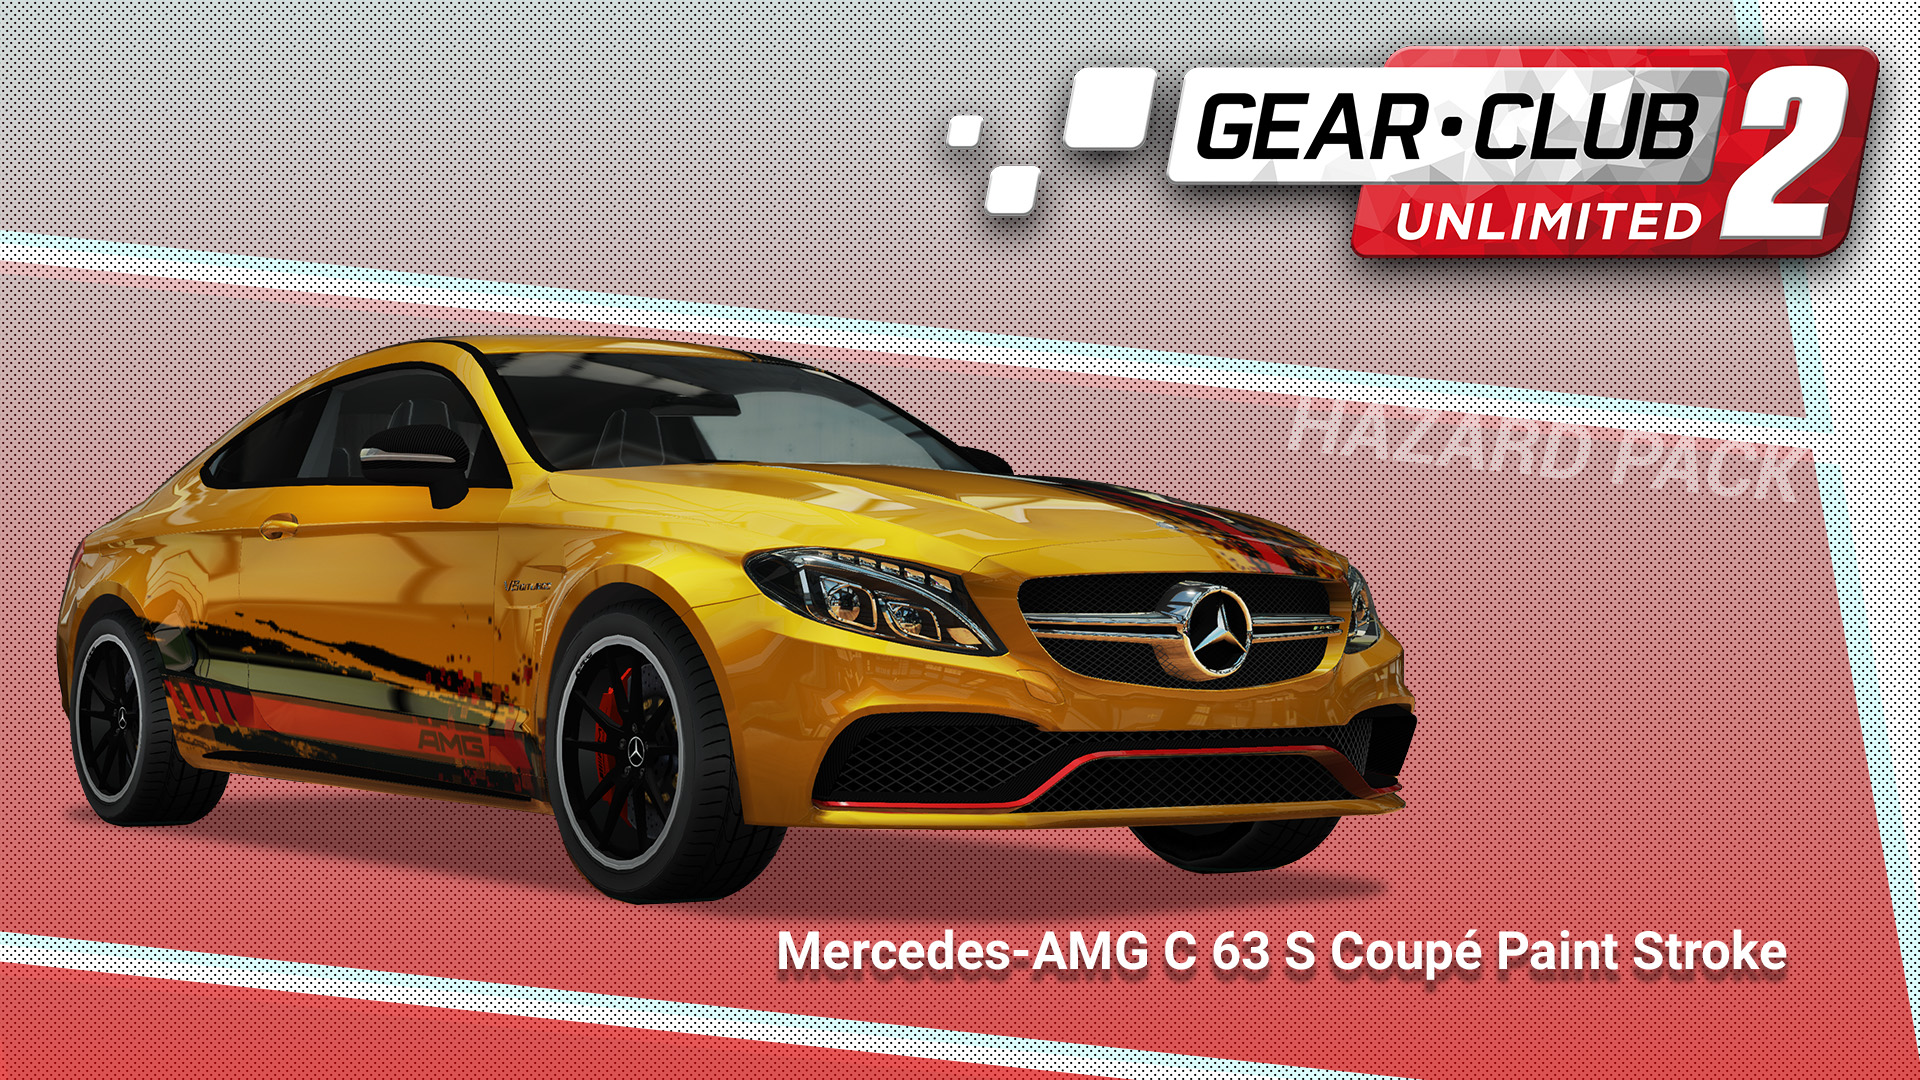 Mercedes-AMG C 63 S Coupé Paint Stroke - Gear.Club Unlimited 2